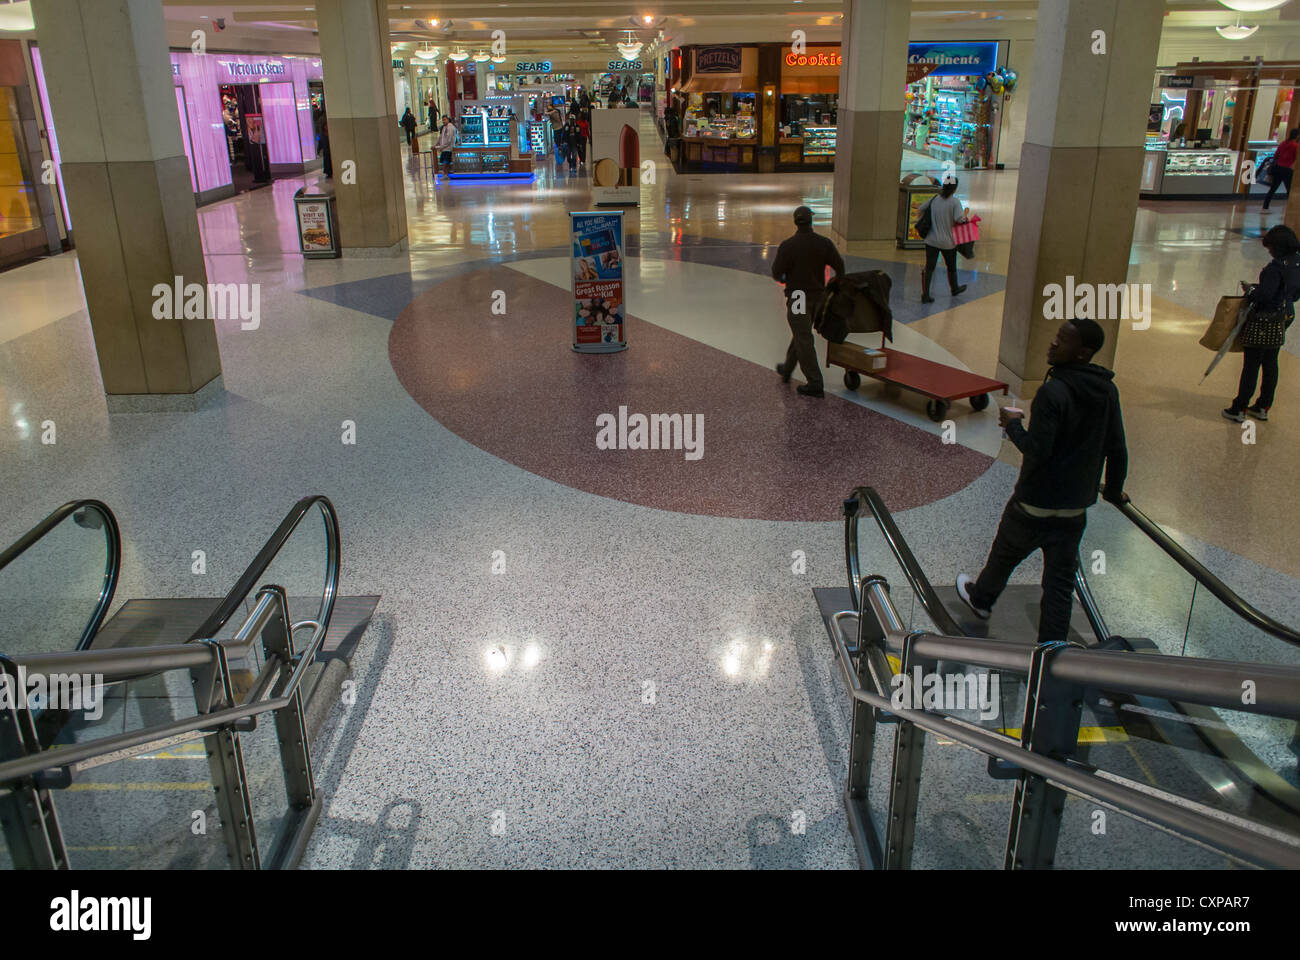 New York City, NY, USA, inside 'King's Plaza' Shopping Mall, Hallway Stock Photo